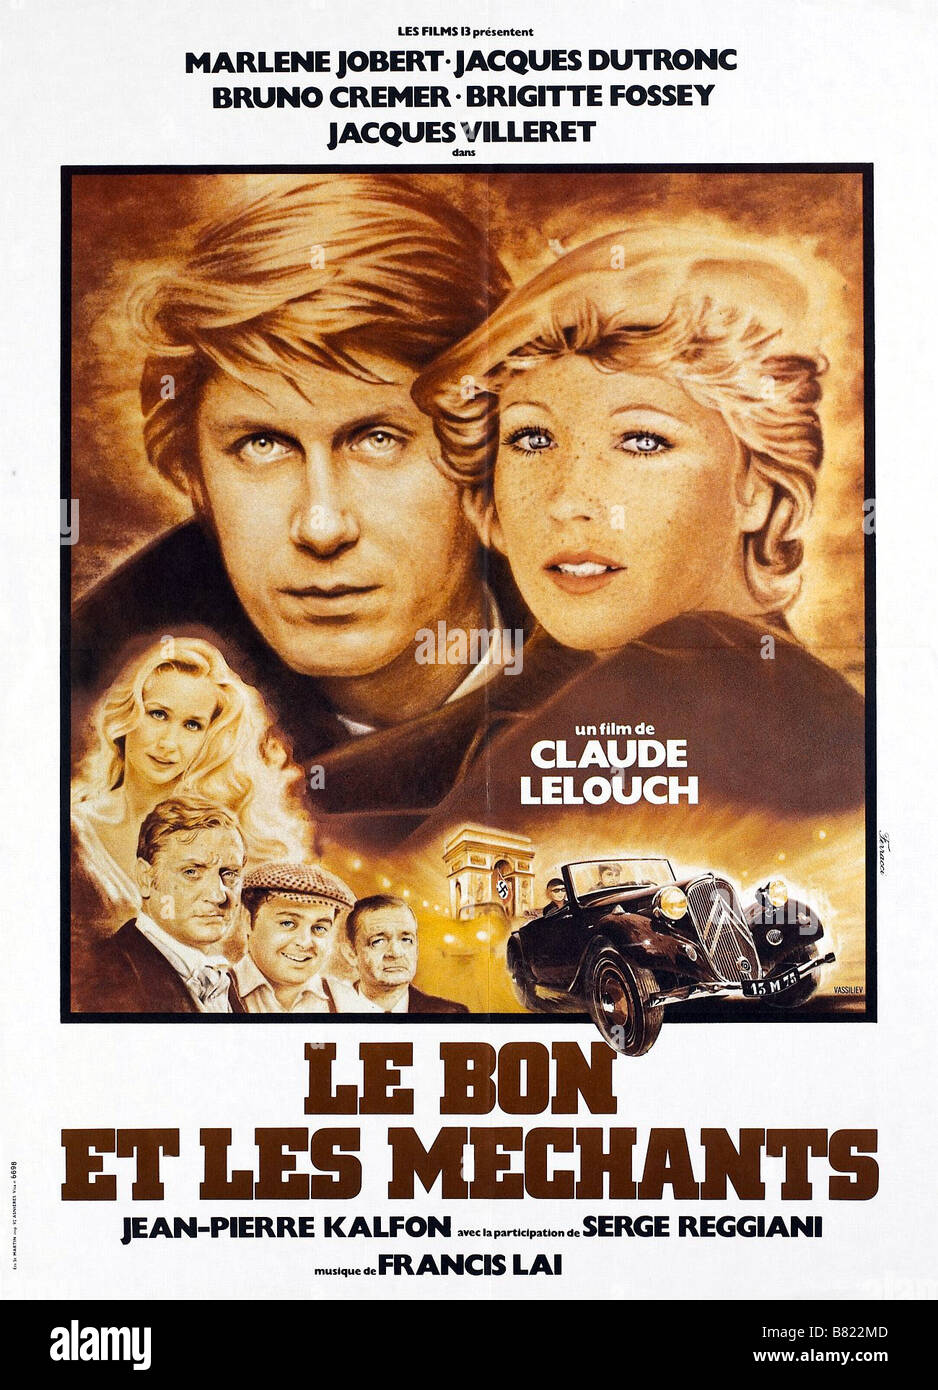 Le Bon et les mechants The Good and the Bad Year: 1976 - France Jacques Dutronc , Marlène Jobert  Director: Claude Lelouch Movie poster Stock Photo